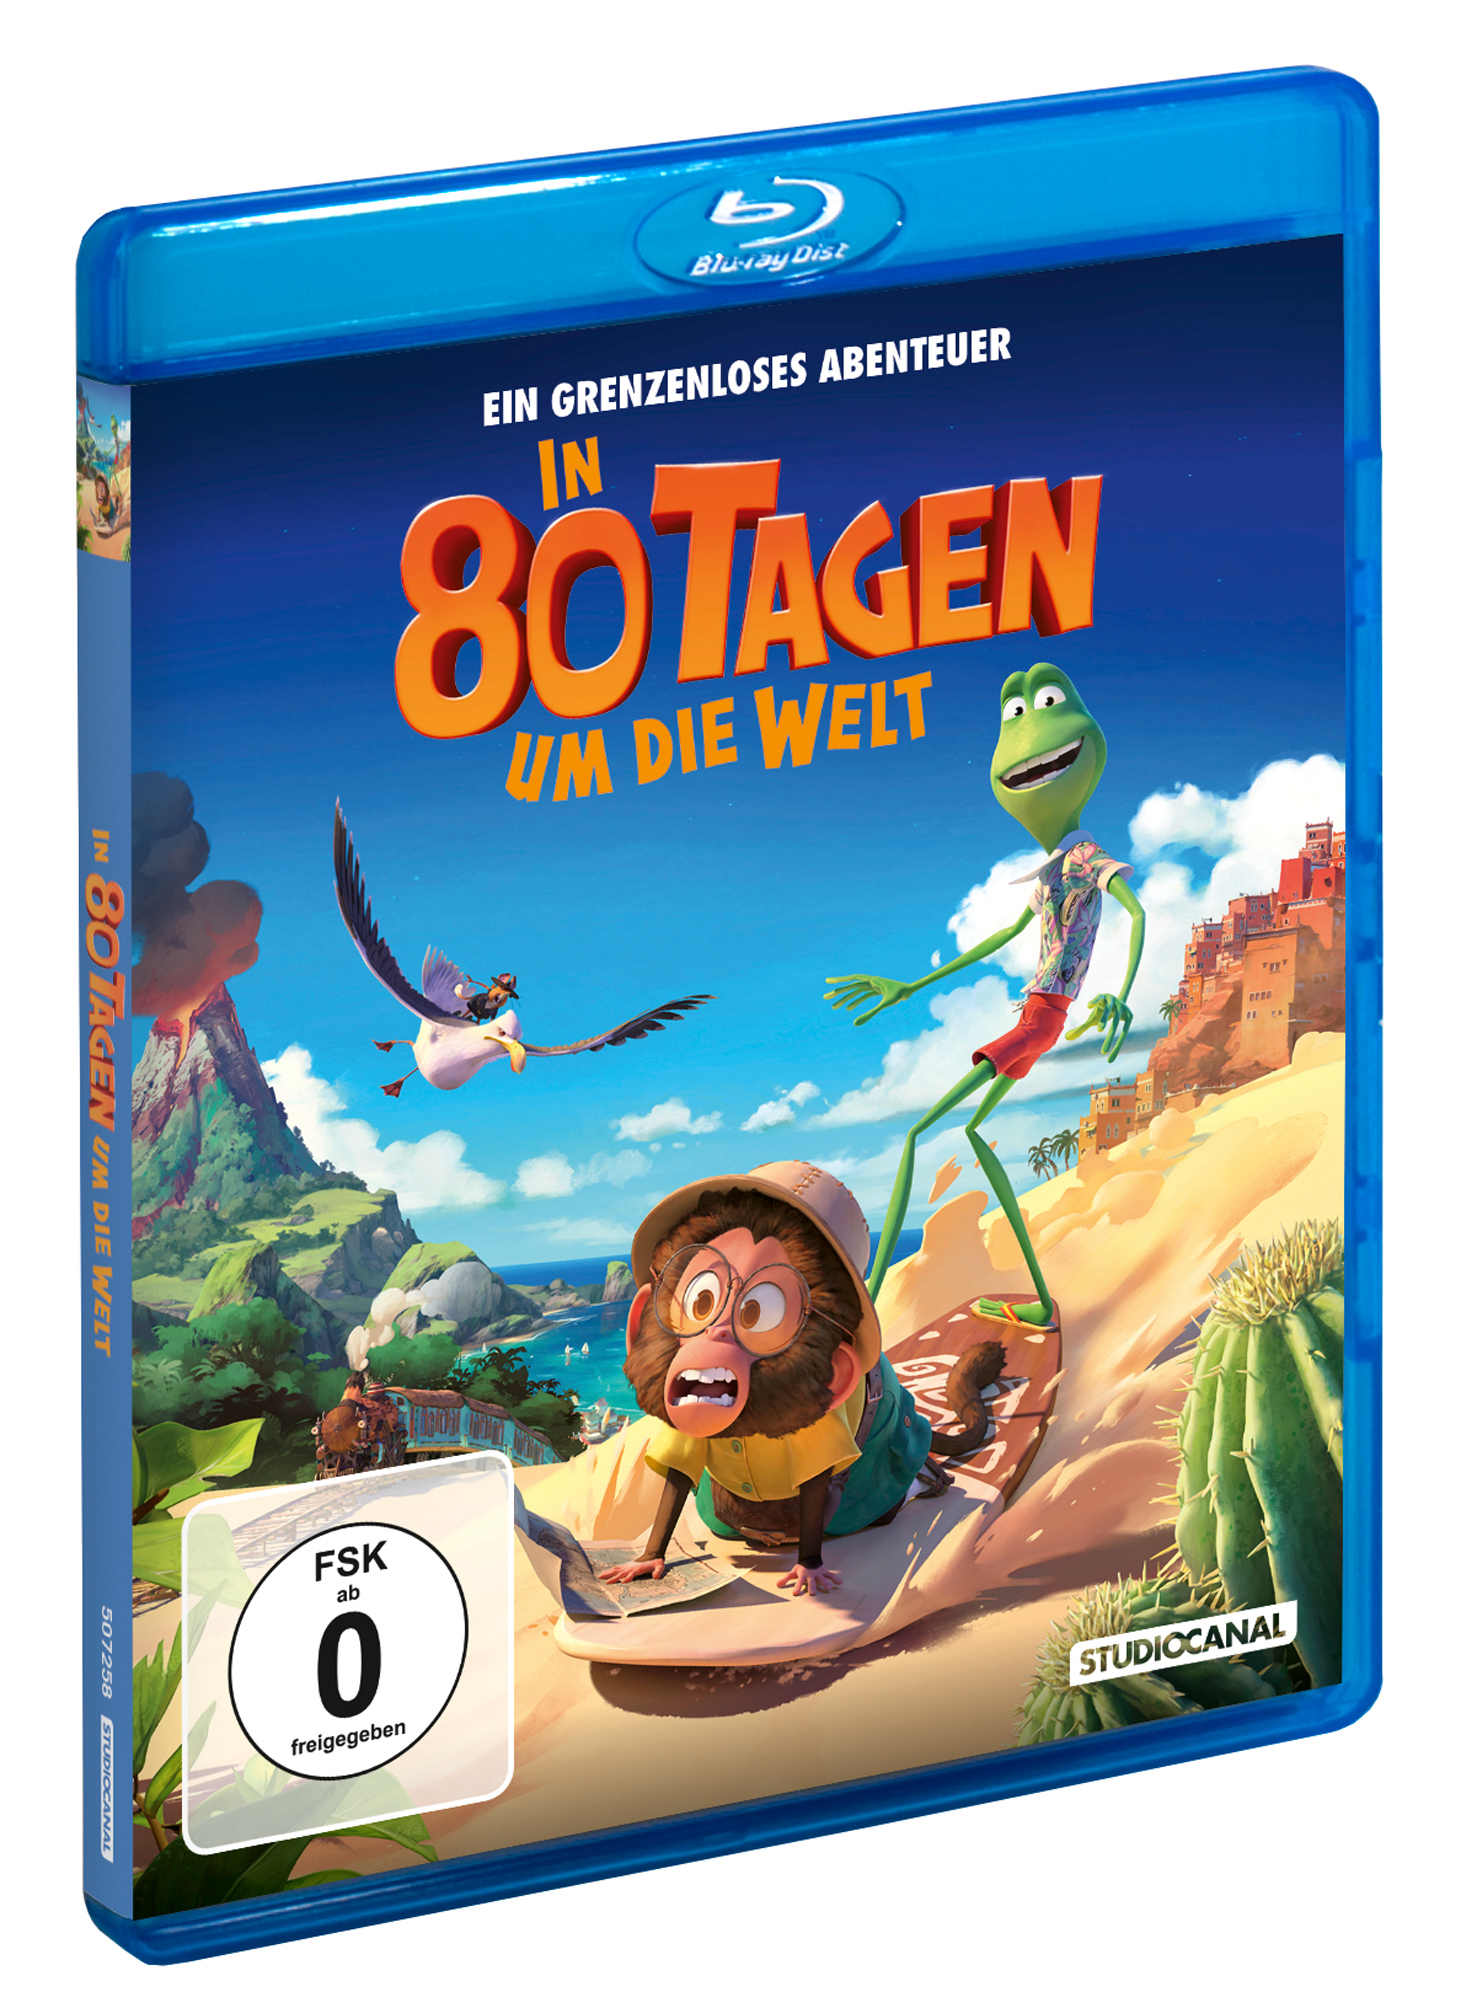 In 80 Tagen um die Welt (Blu-ray) Image 2